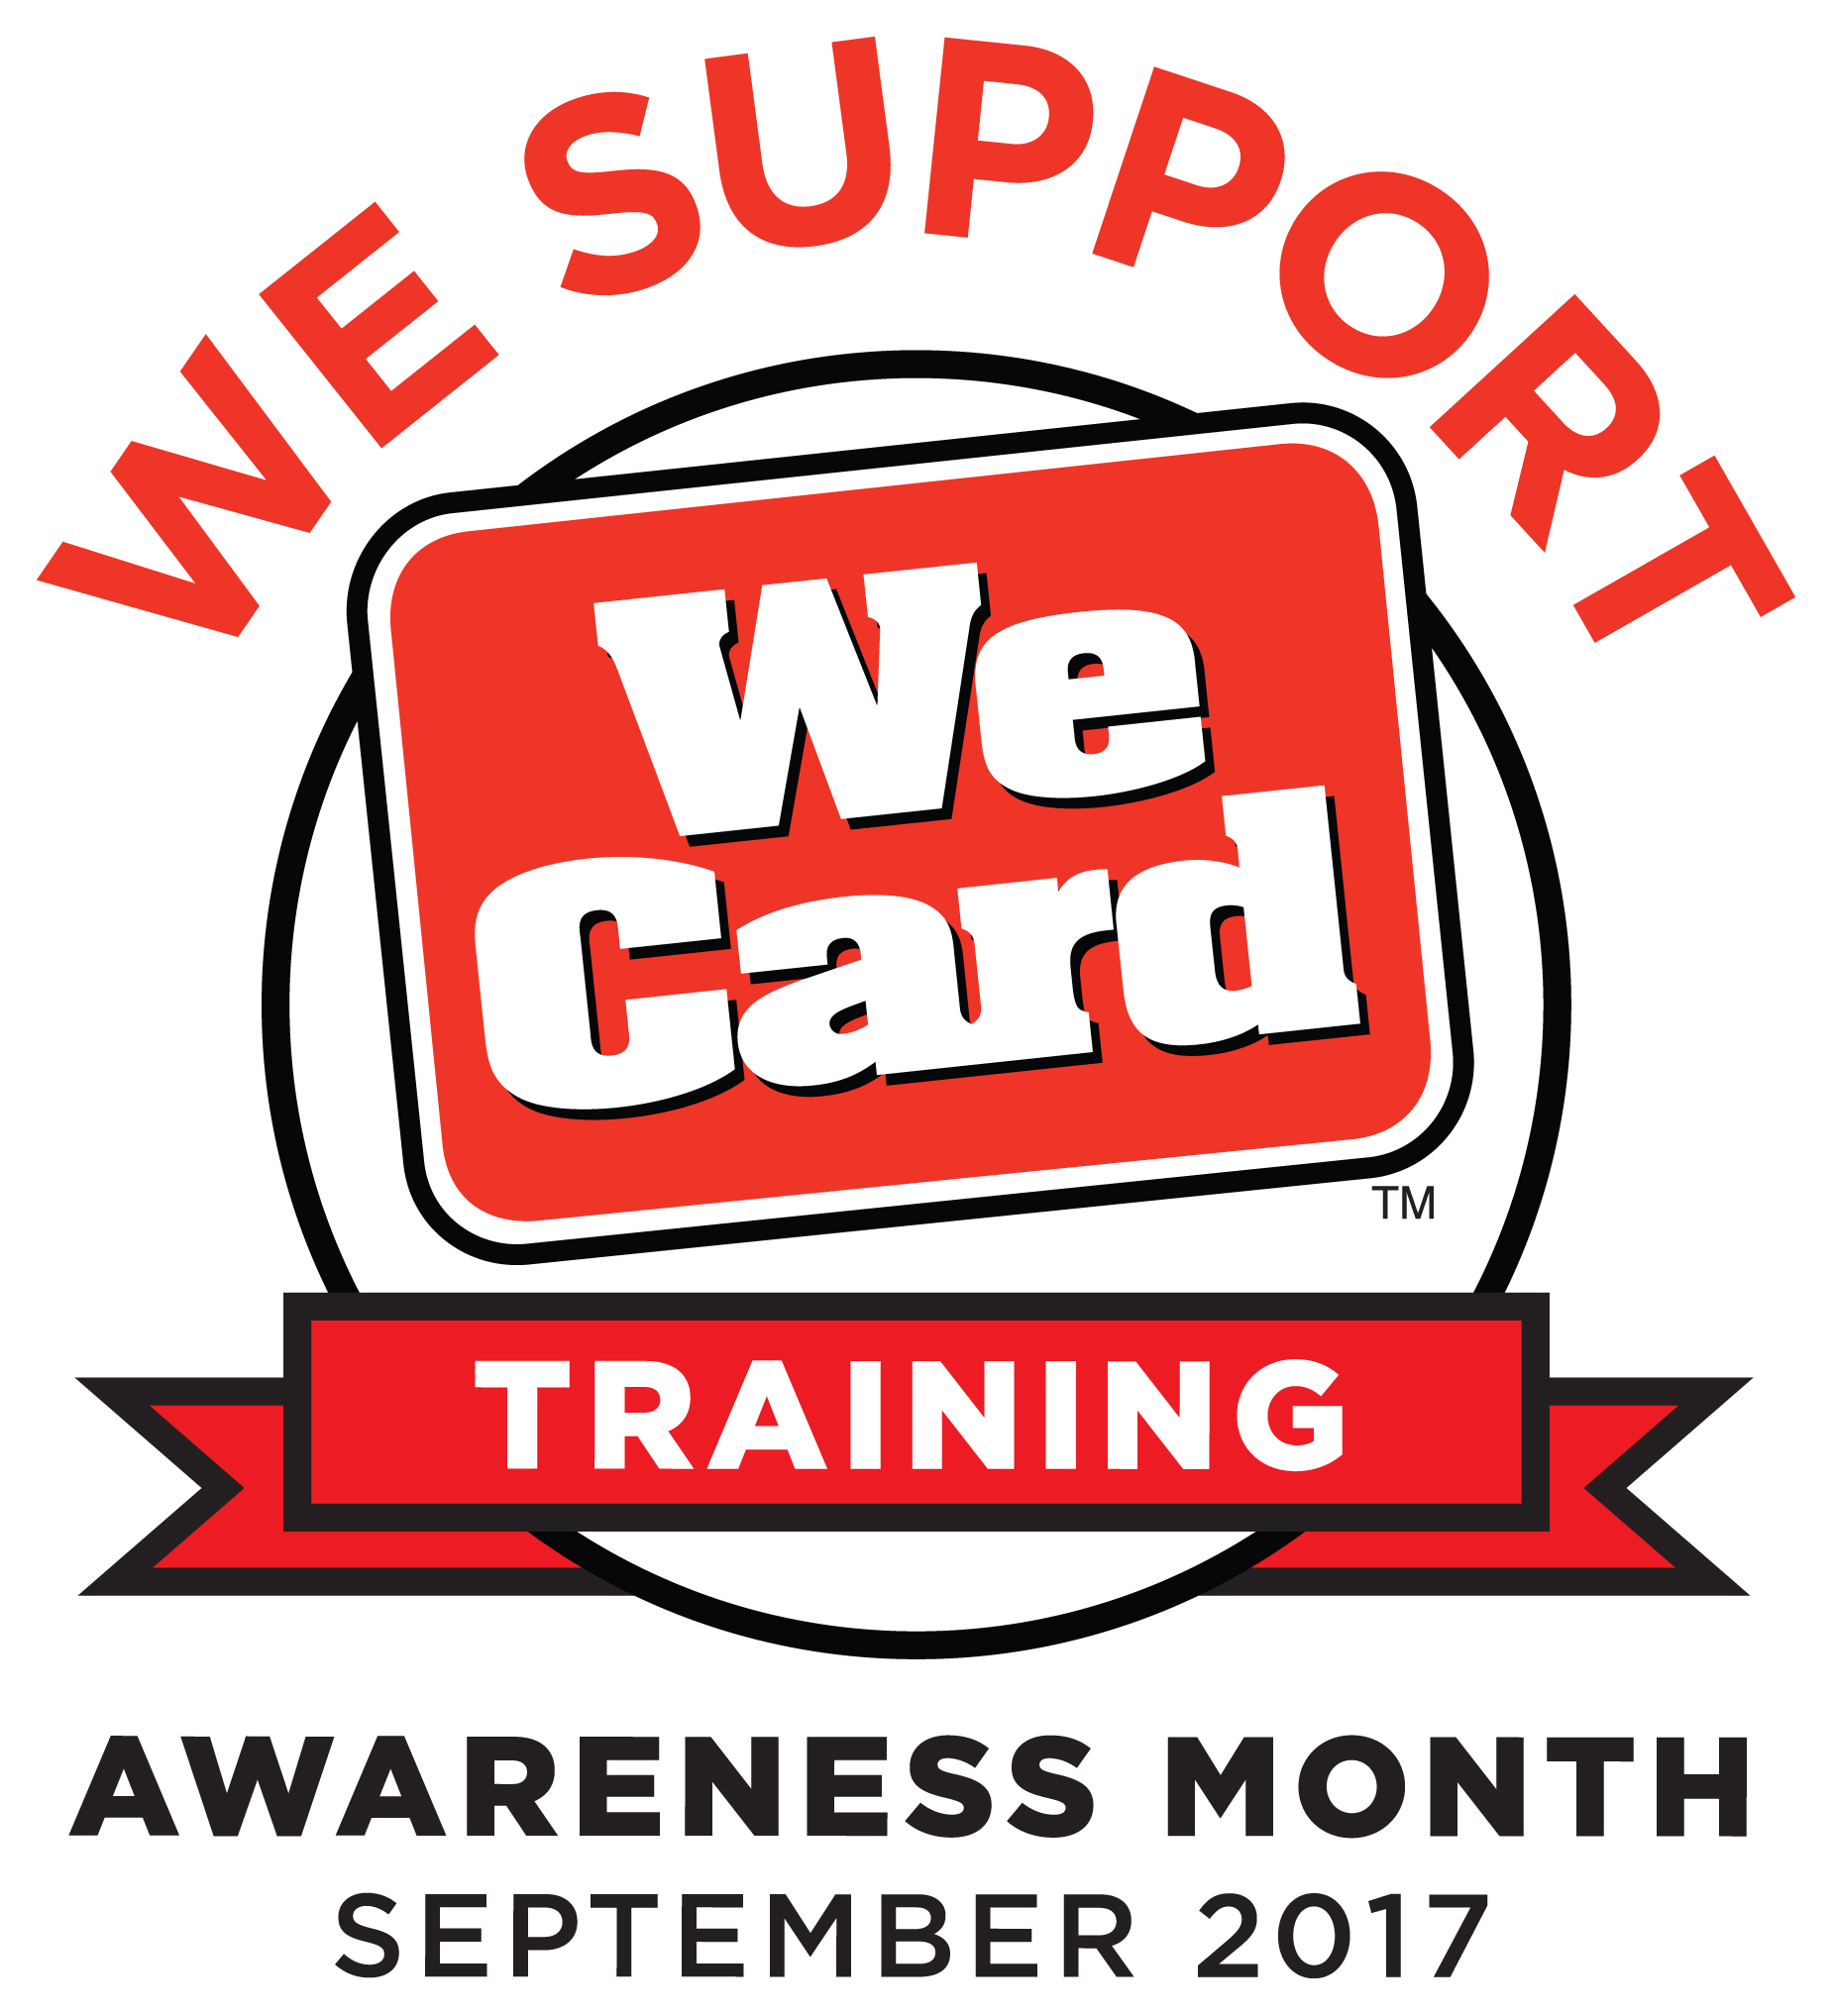 We Card Awareness Month image